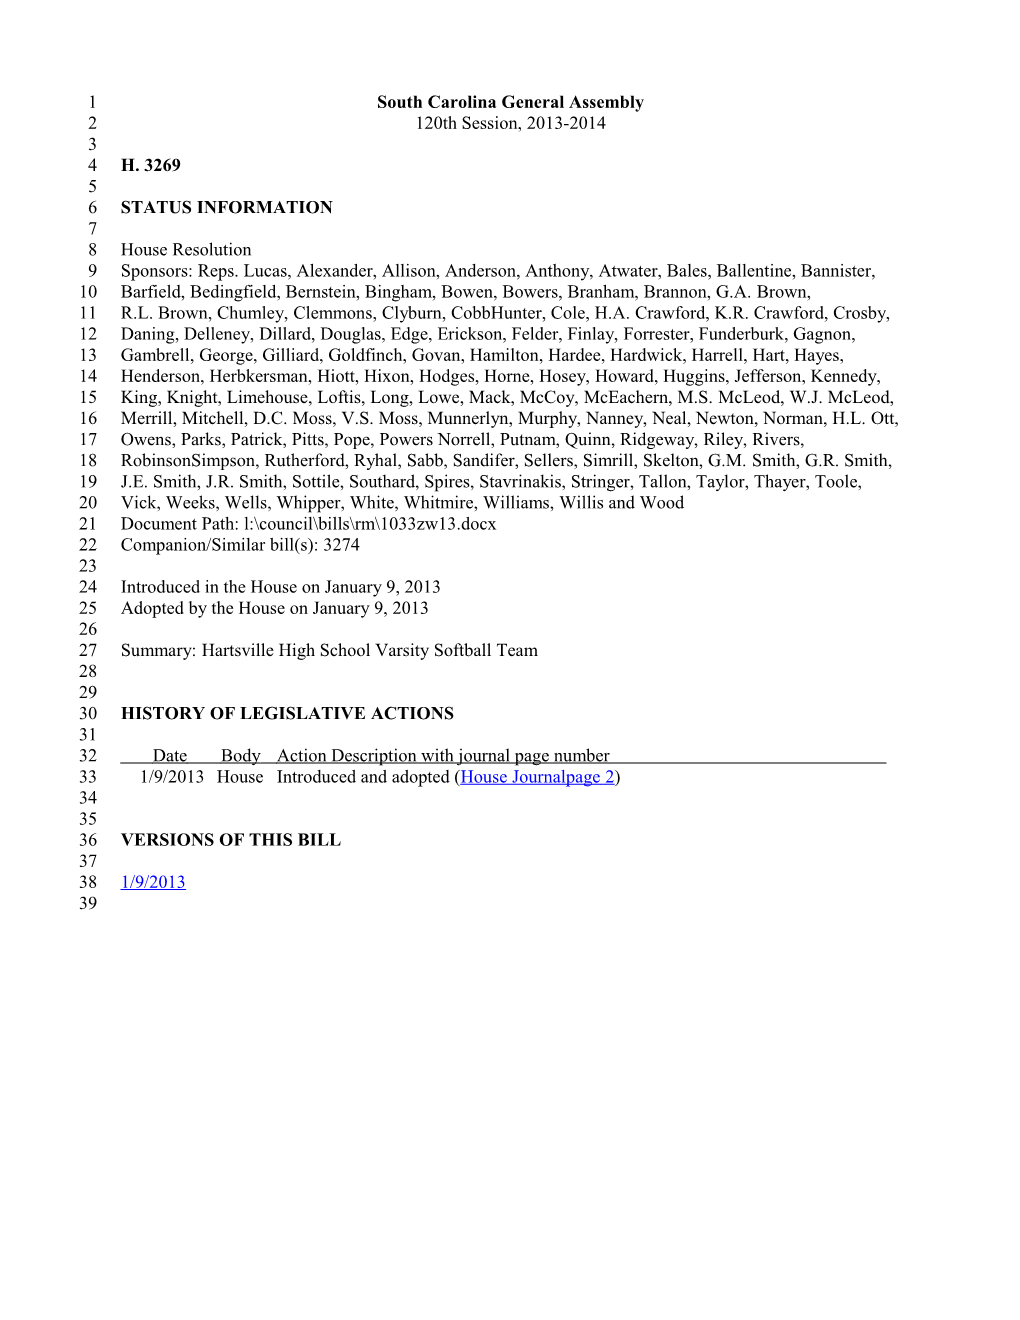 2013-2014 Bill 3269: Hartsville High School Varsity Softball Team - South Carolina Legislature